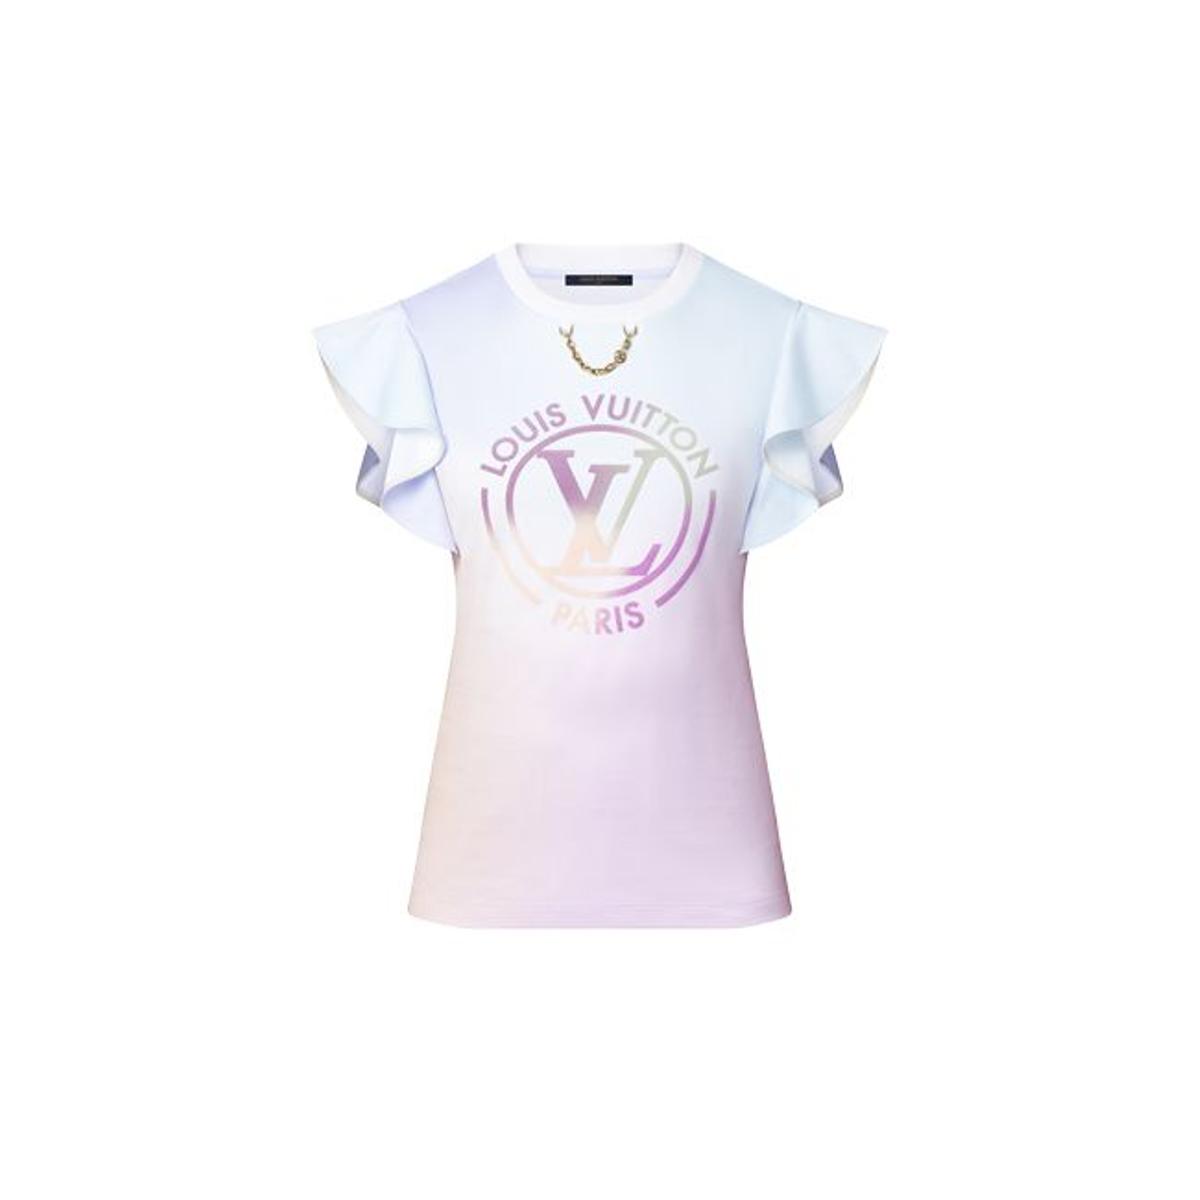 Camiseta LV Circle, de Louis Vuitton